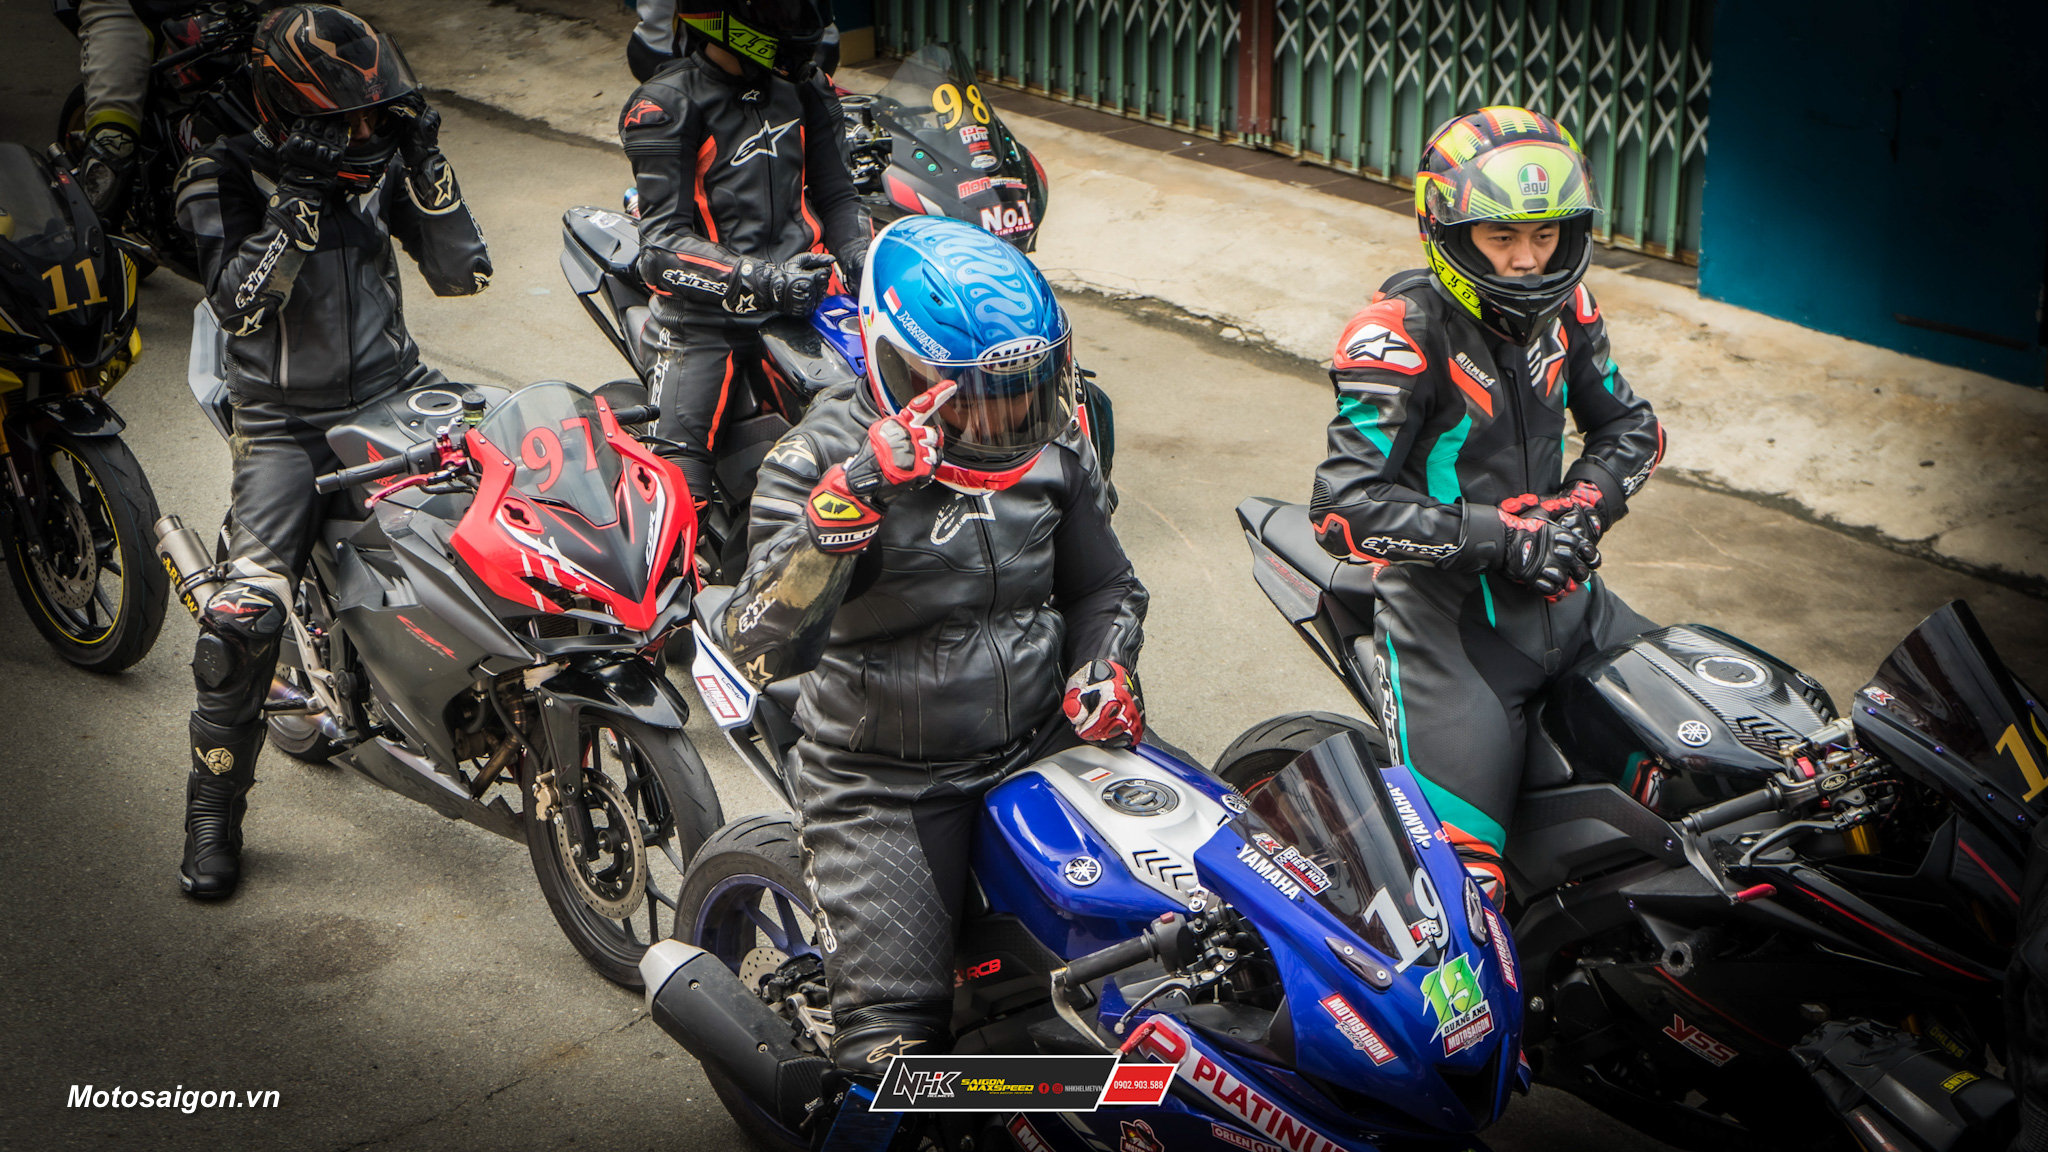 Dầu nhớt Orlen và NHK Helmets chính thức tài trợ đội đua Motosaigon Racing